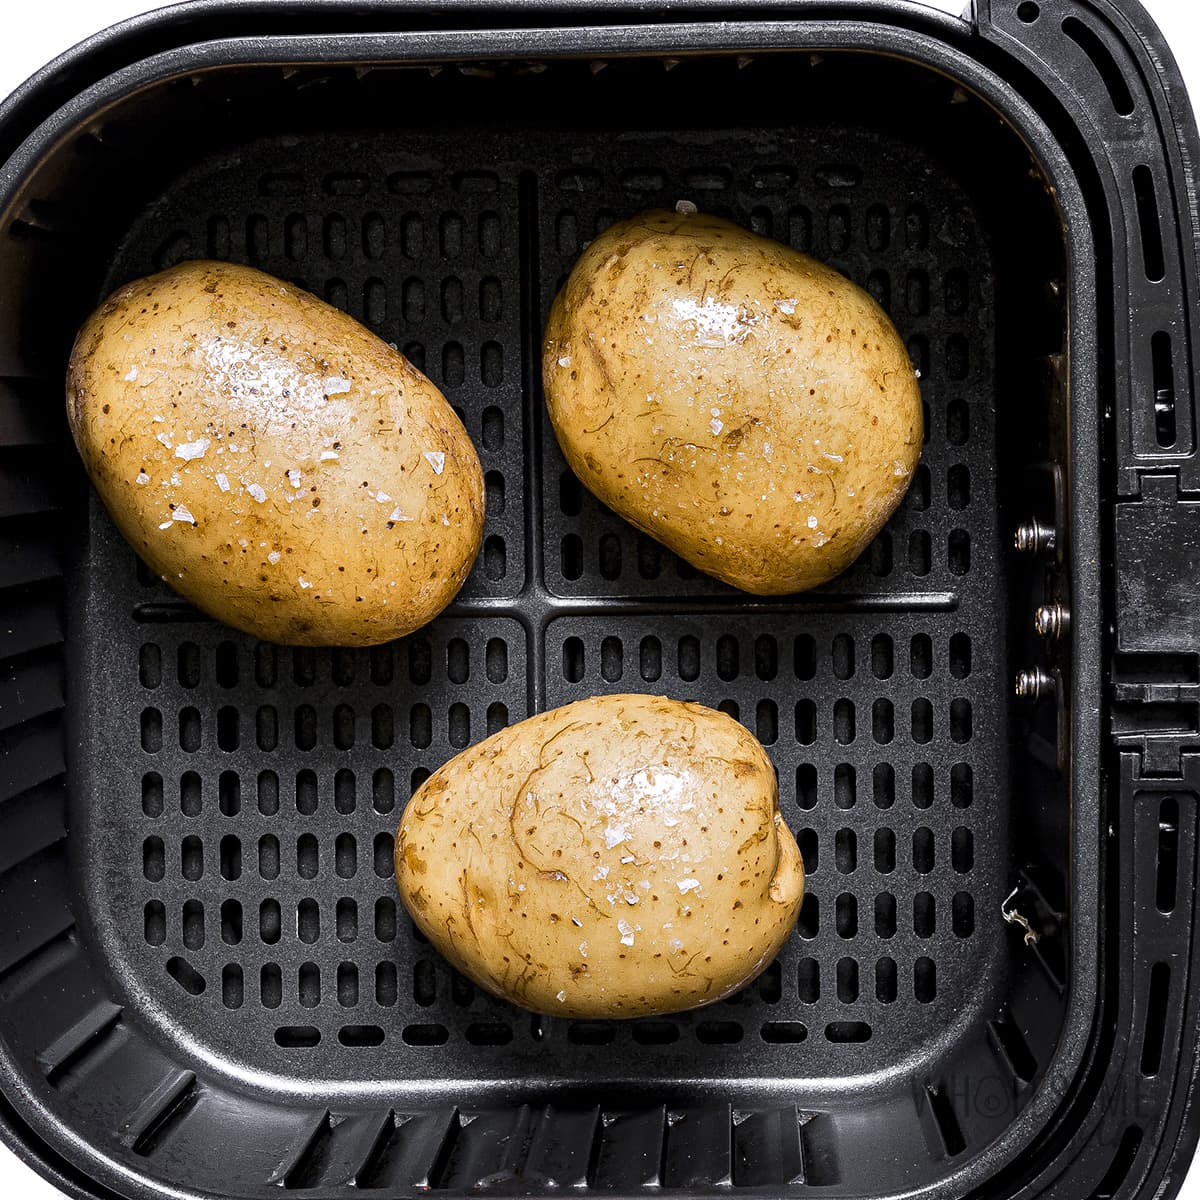 Potatoes seasoned in air fryer basket before cooking.